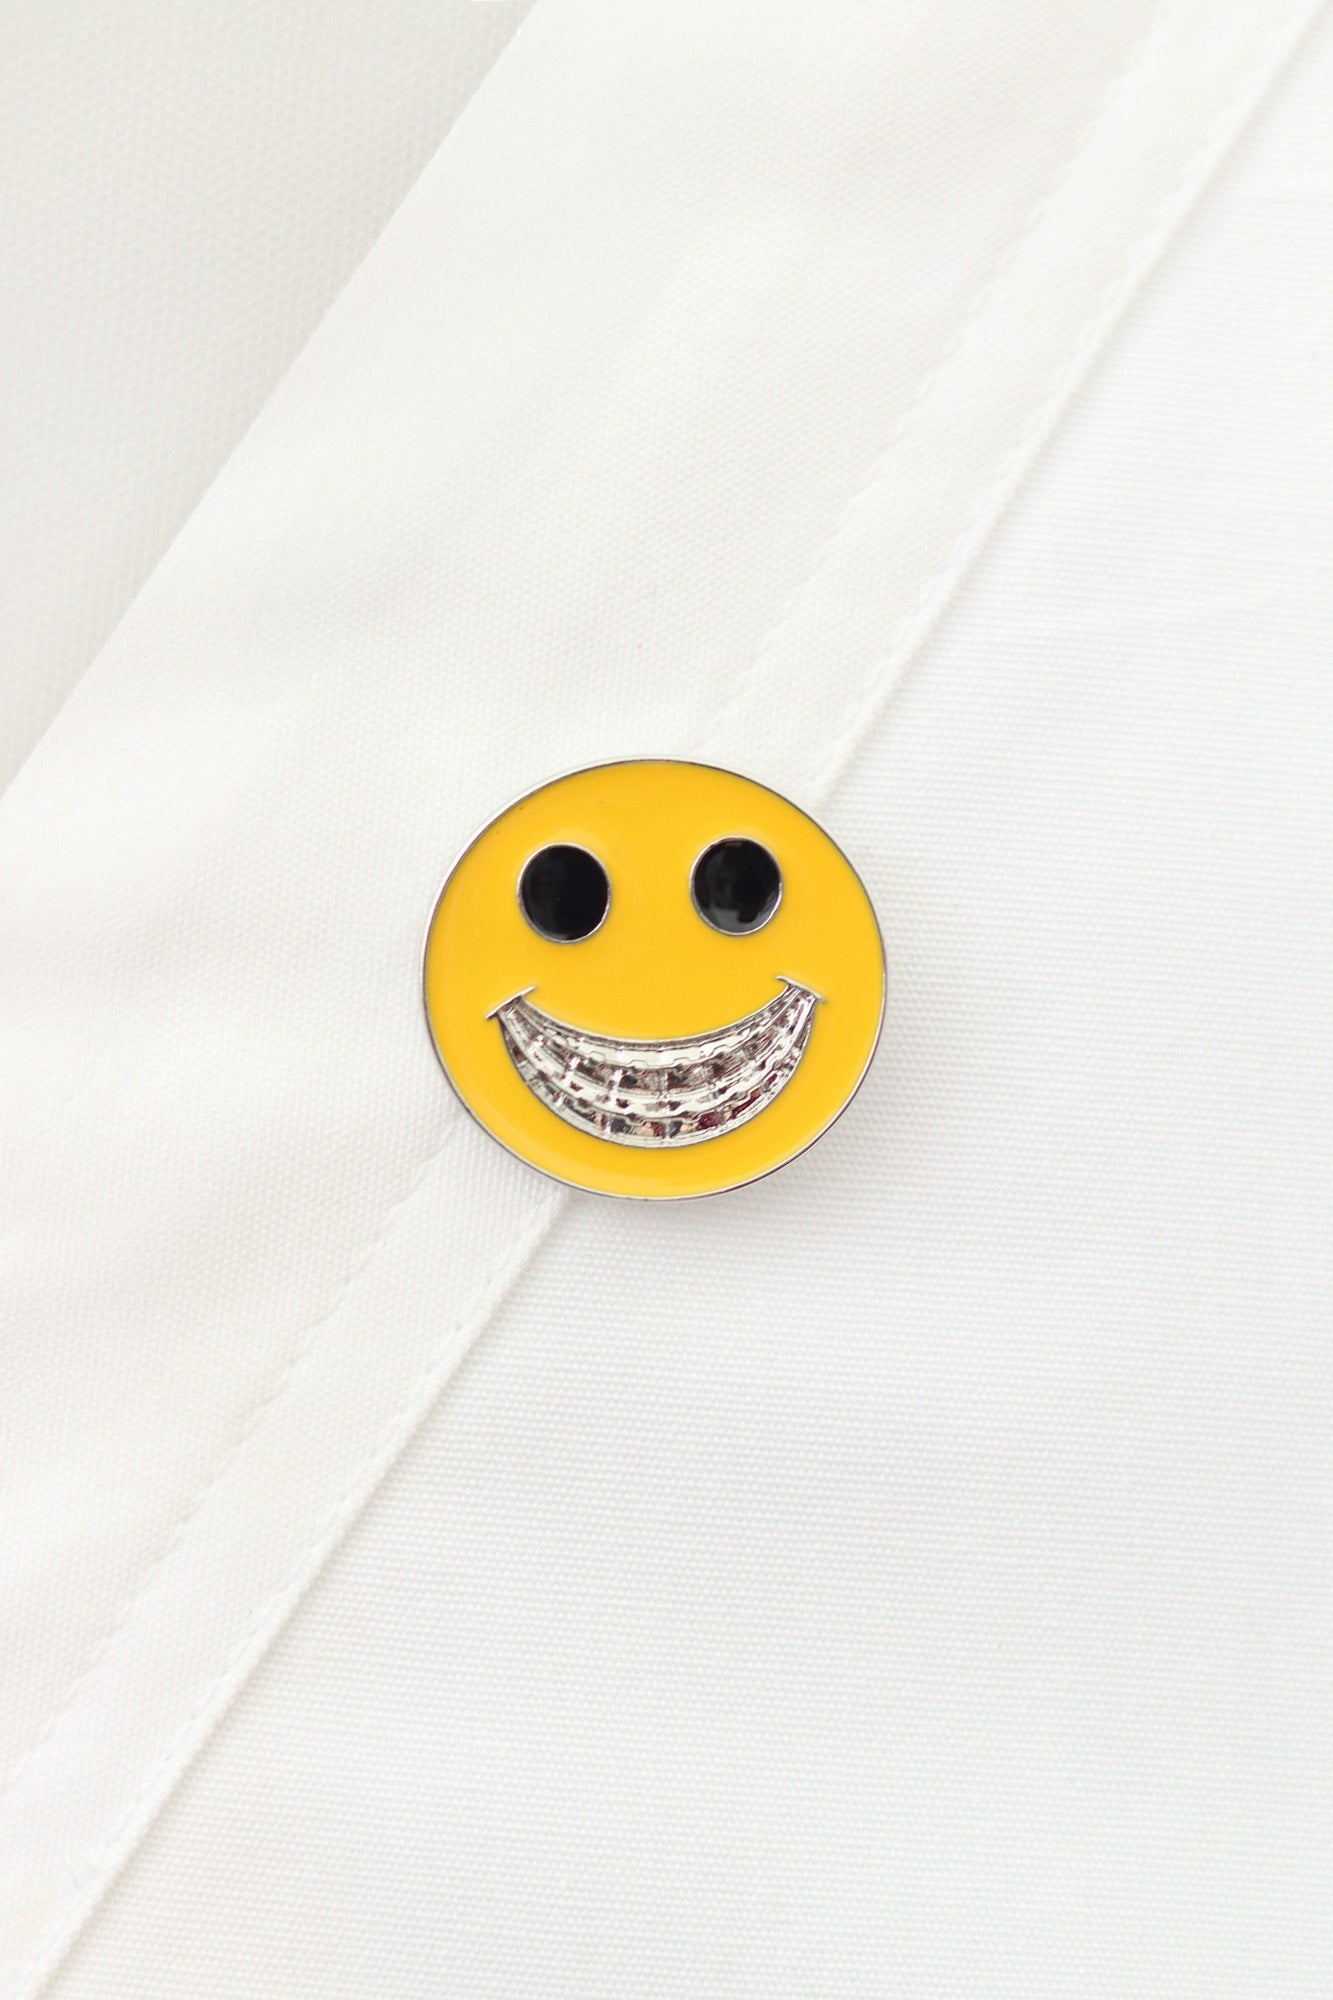 Smiley Brace Pin